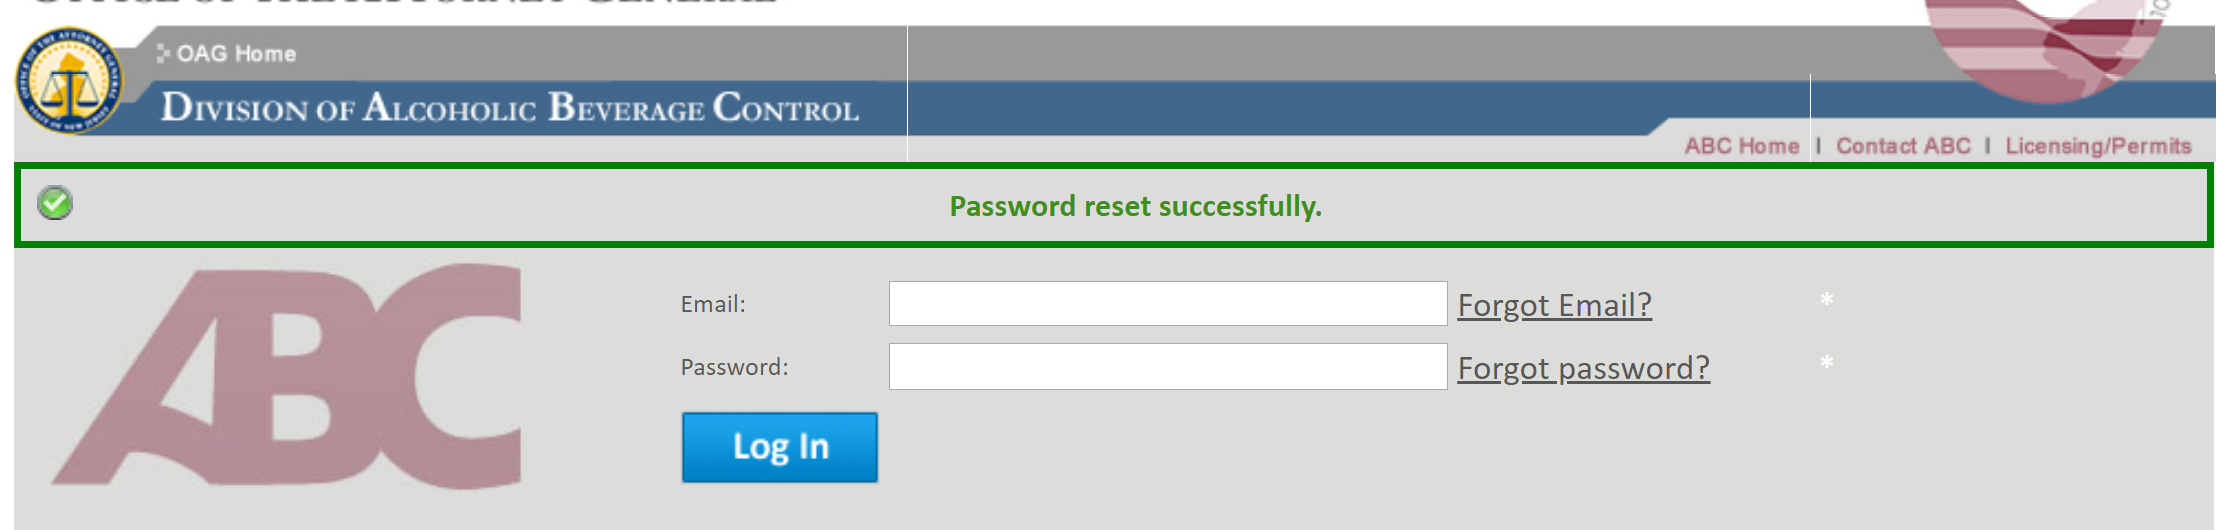 passwordReset_successfulReset